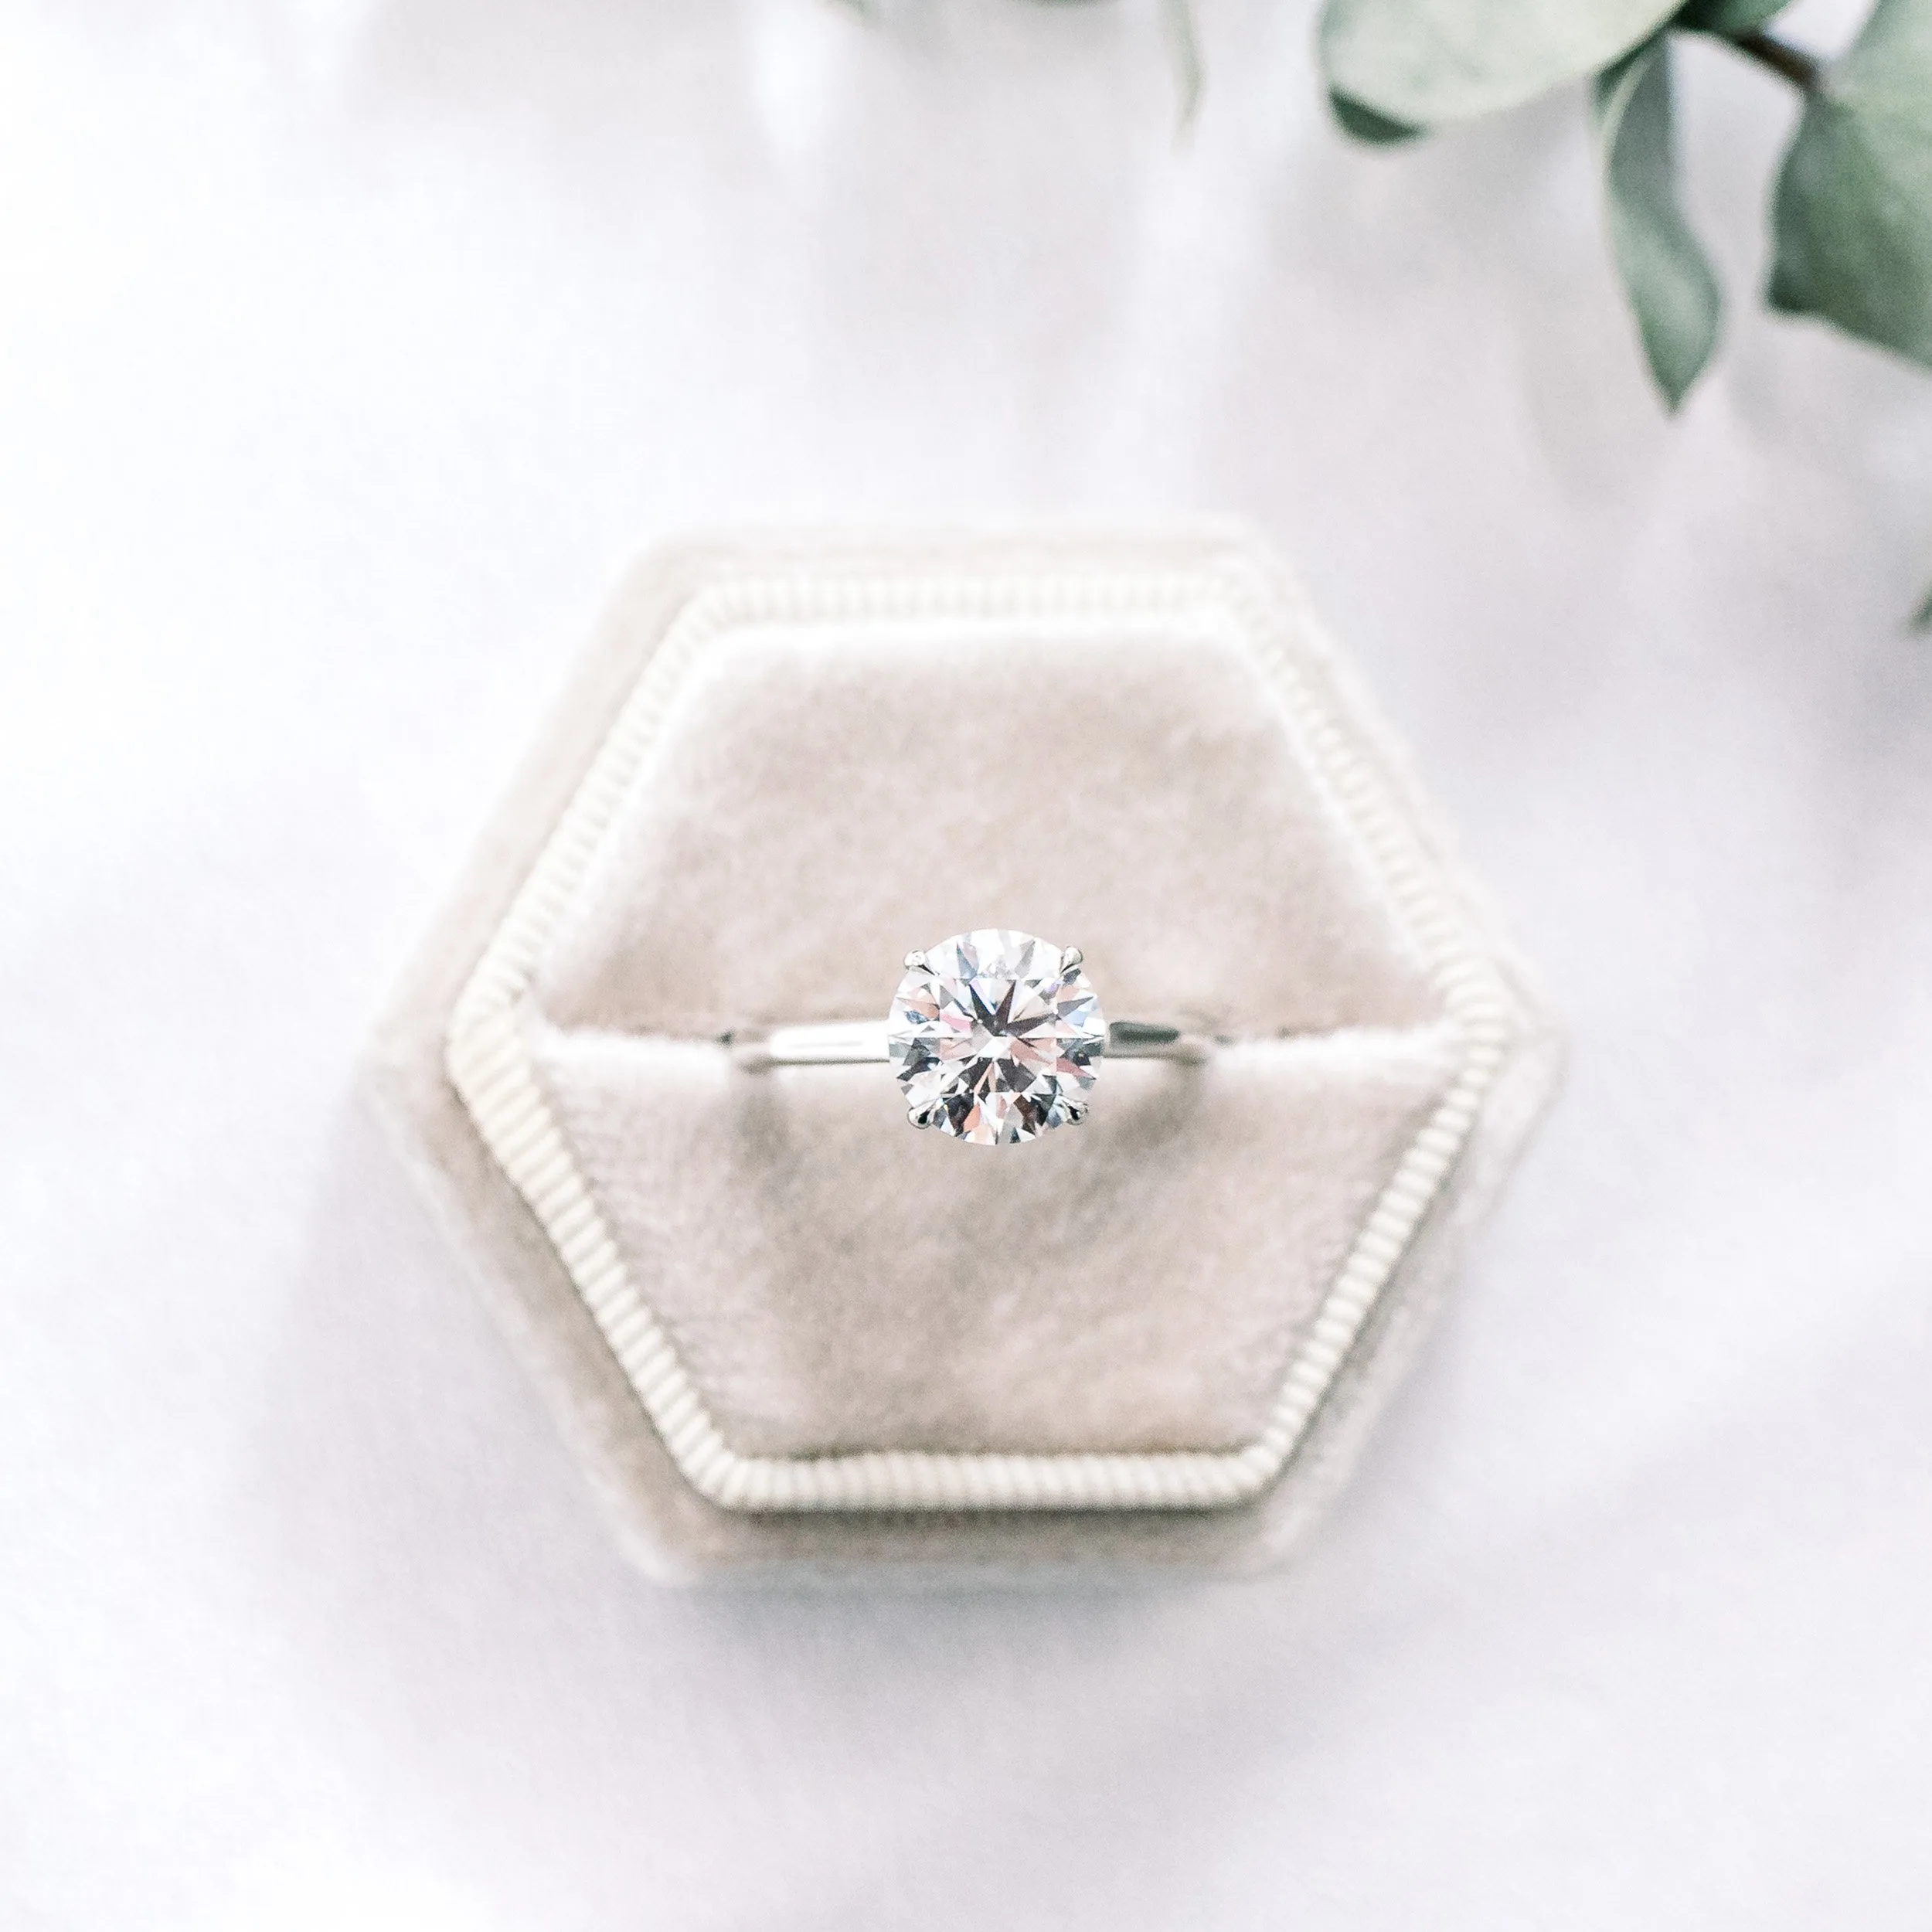 platinum 2 ct round manmade diamond trellis solitaire engagement ring platinum ada diamonds design ad 069 macro